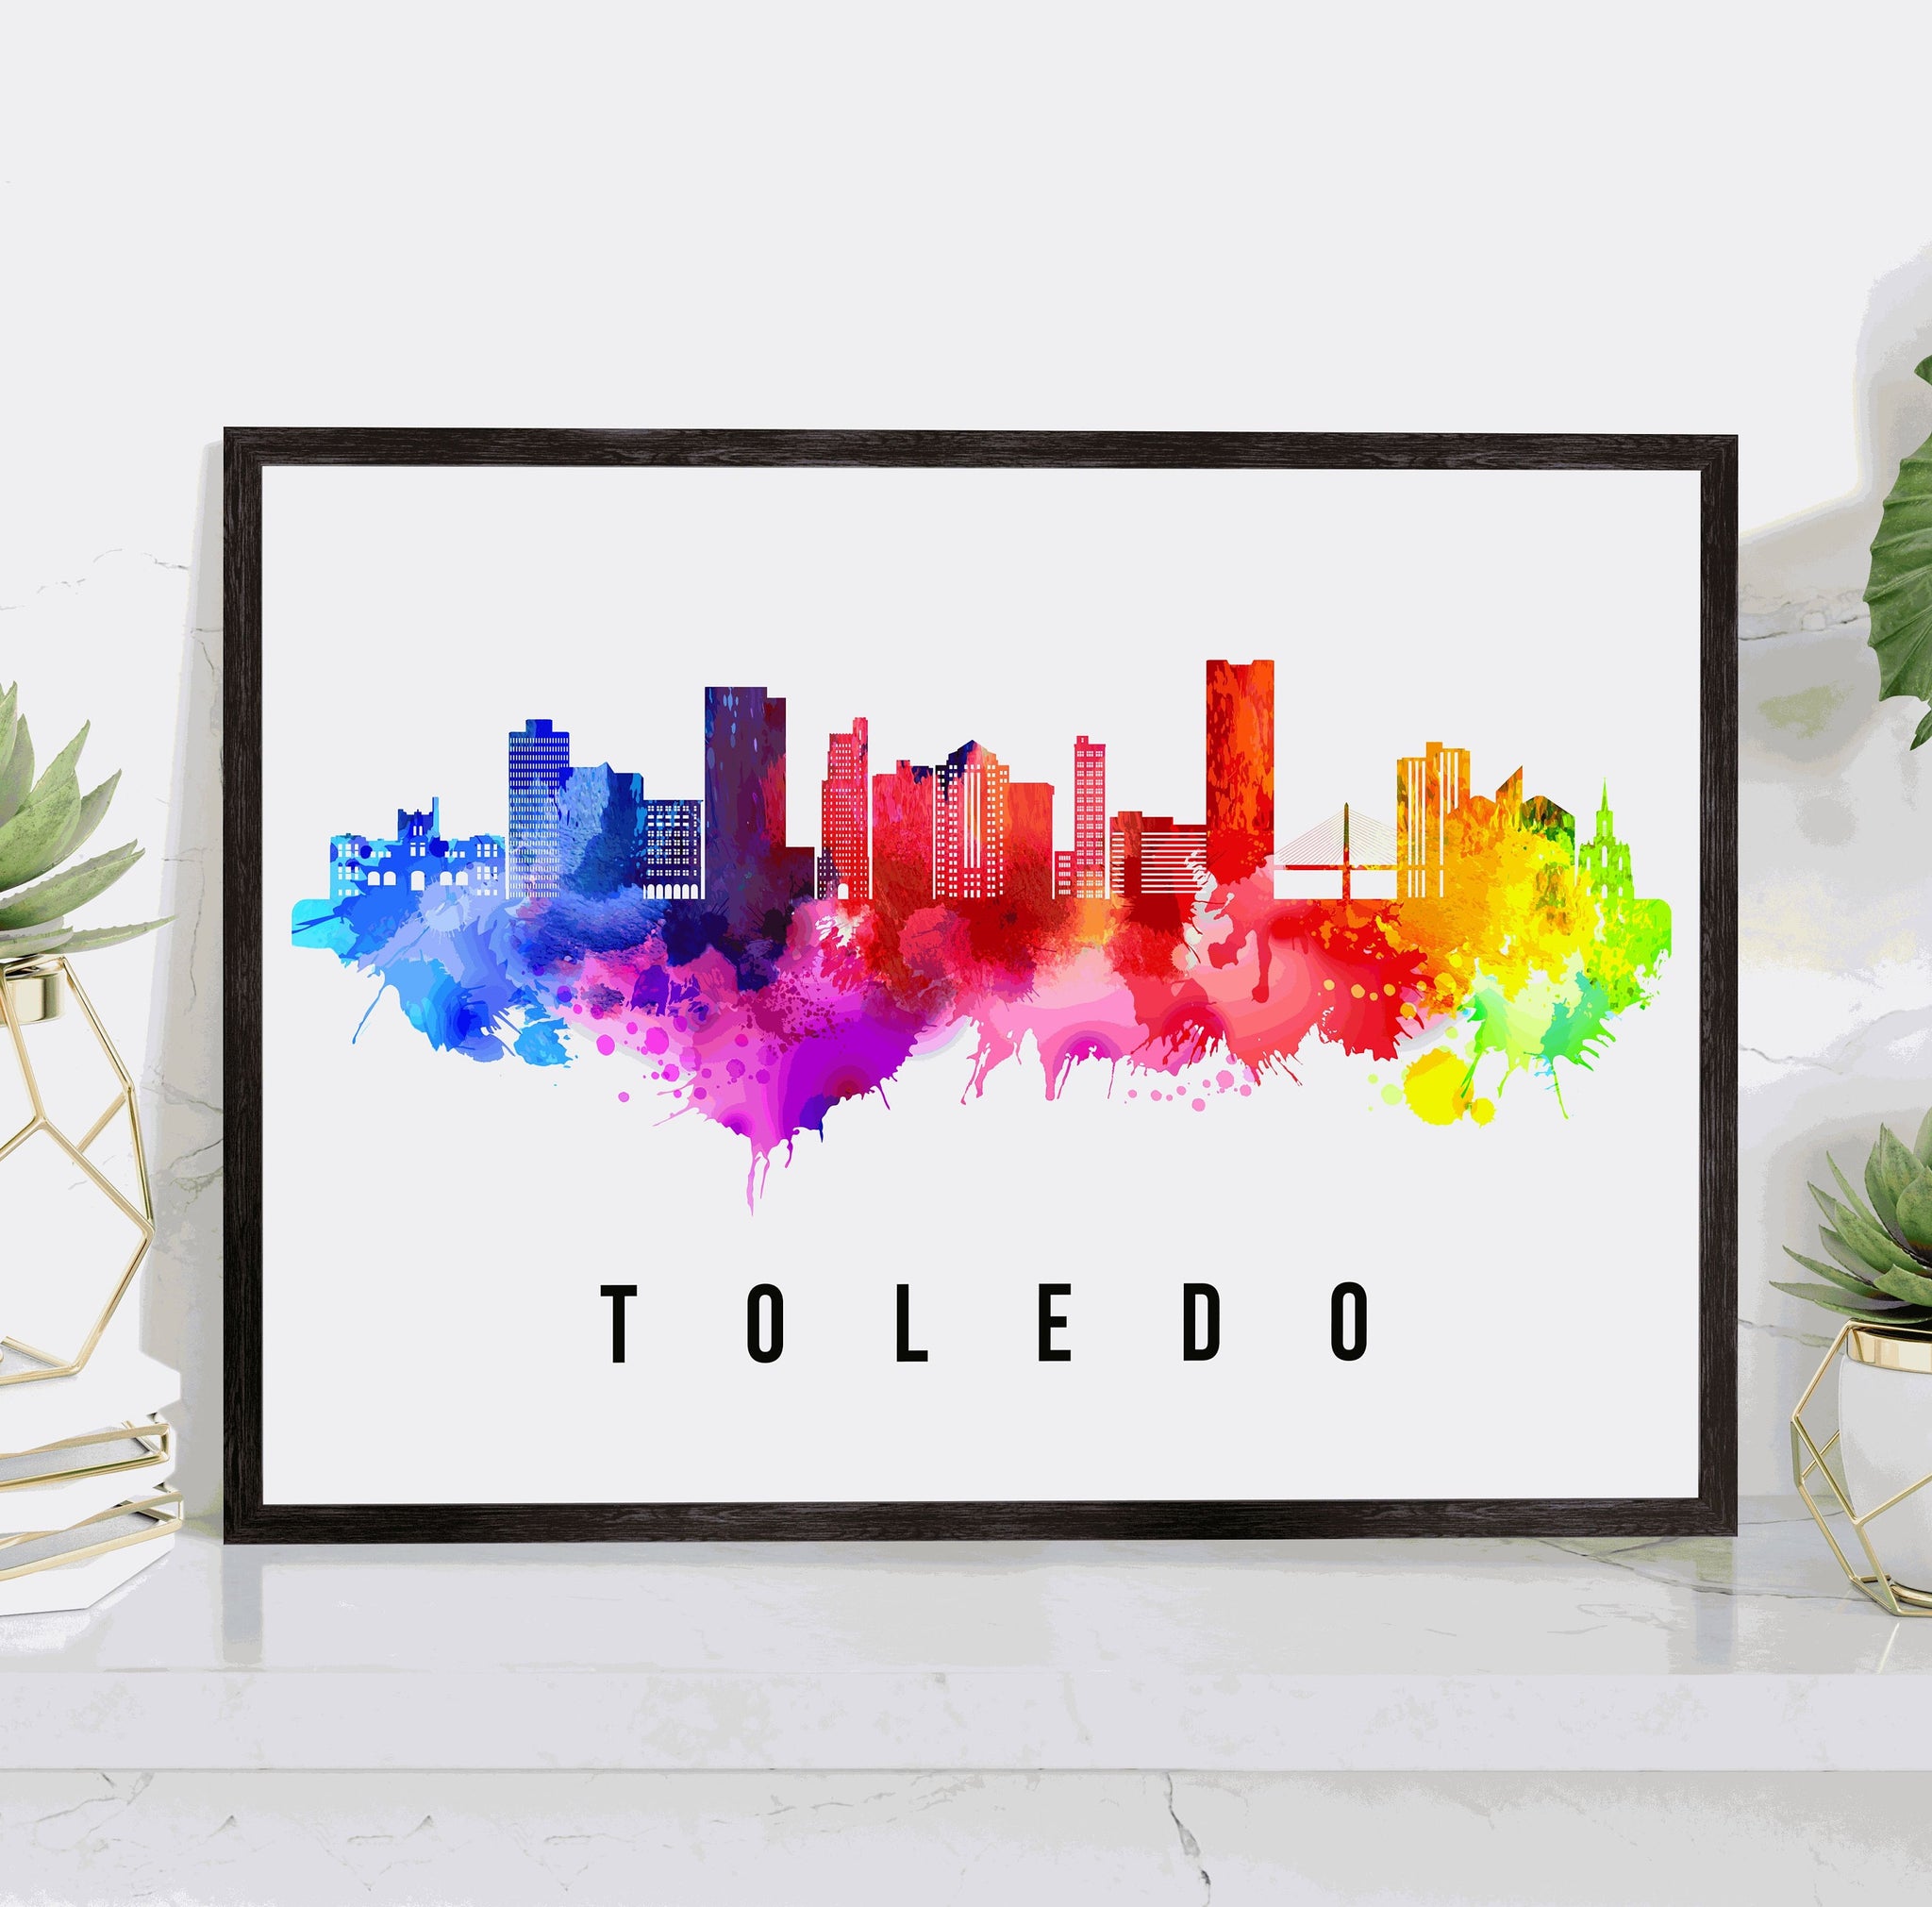 TOLEDO - SPAIN Poster, Skyline Poster Cityscape and Landmark Toledo Illustration Home Wall Art, Office Decor